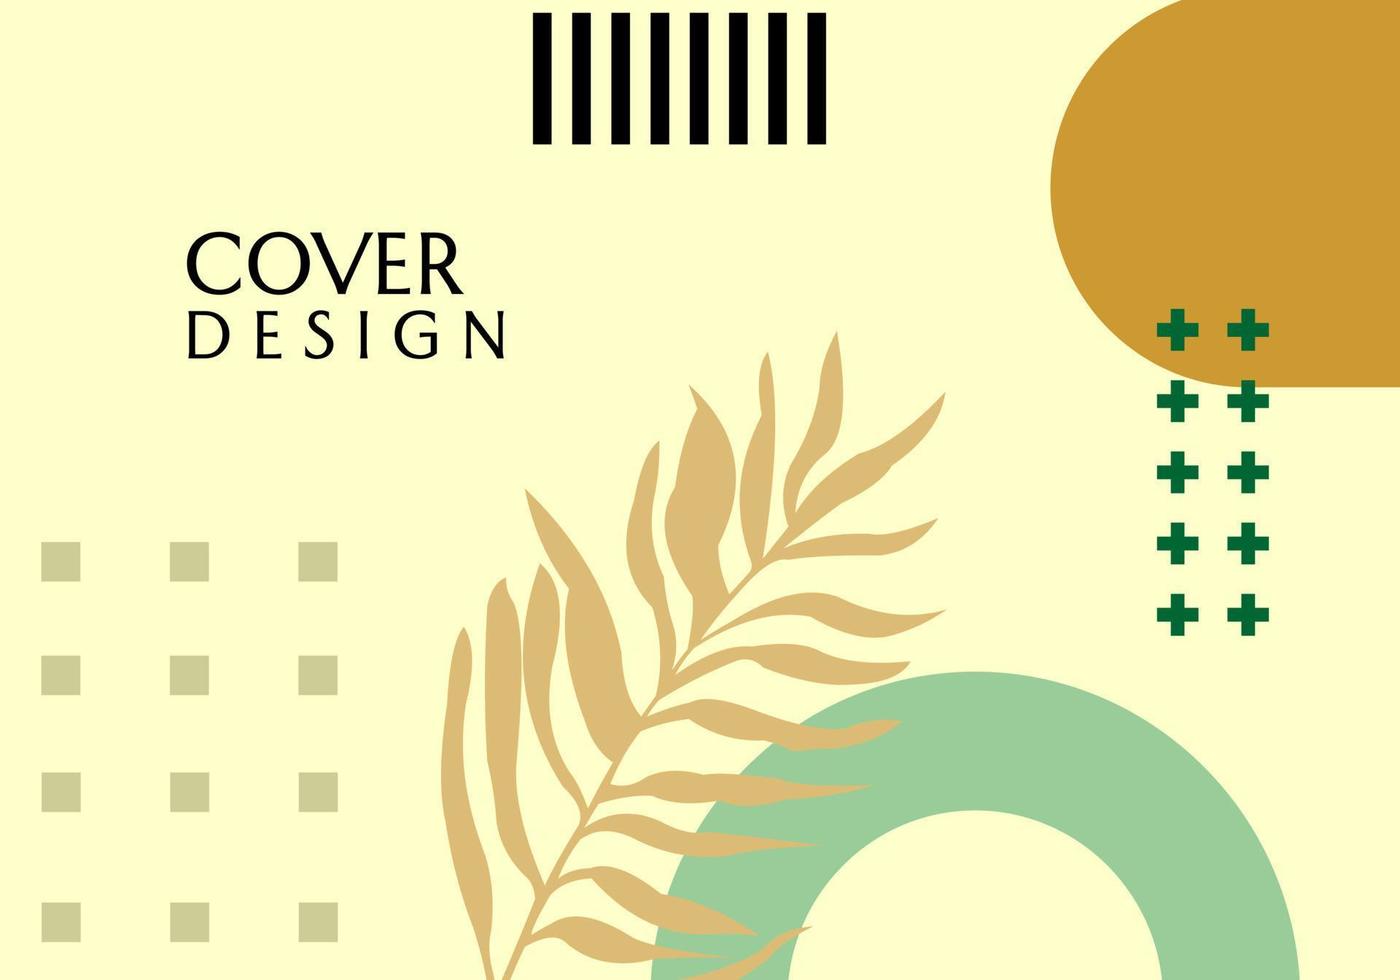 diseño de vectores de geometría. fondo estético marrón con adornos de hojas de palma. para diseño de portada, sitio web, banner